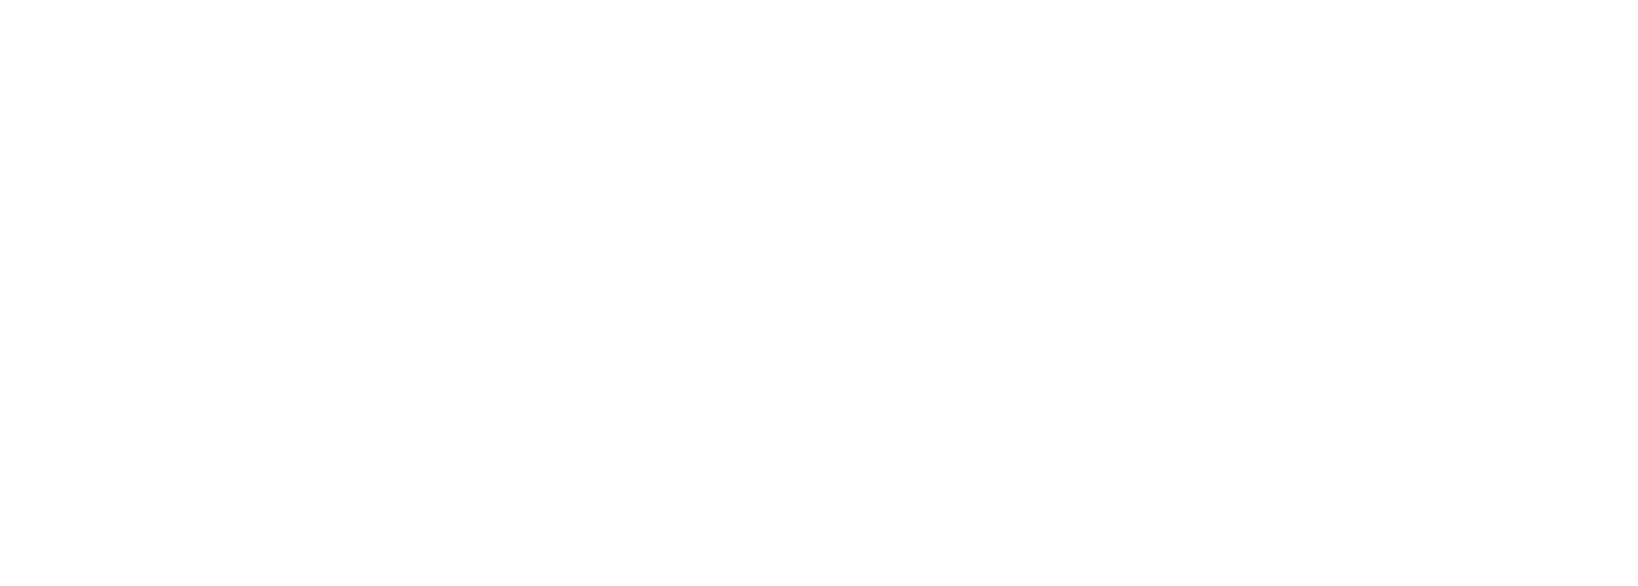 Focus 34